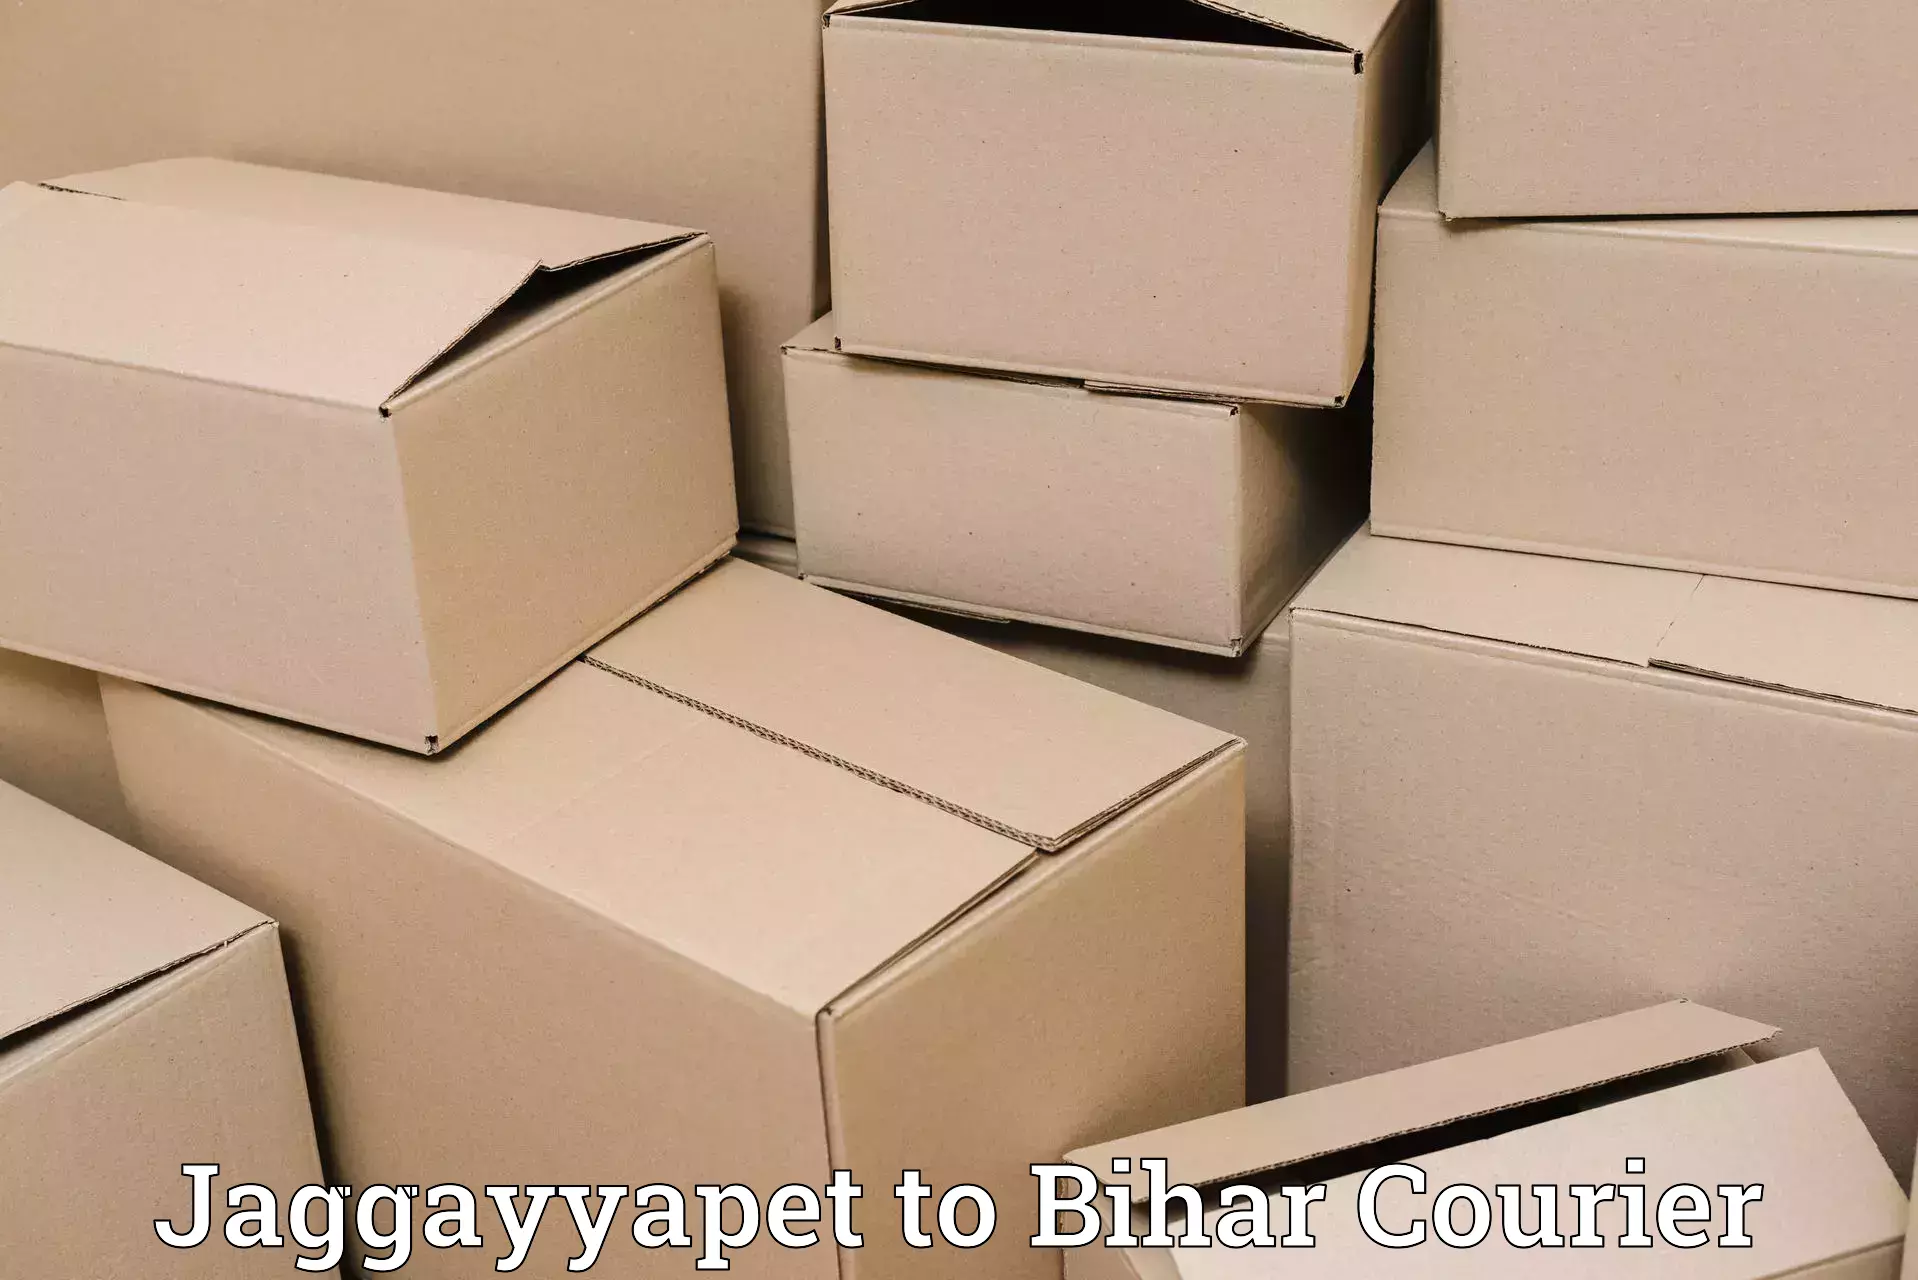 Enhanced delivery experience Jaggayyapet to Goh Aurangabad